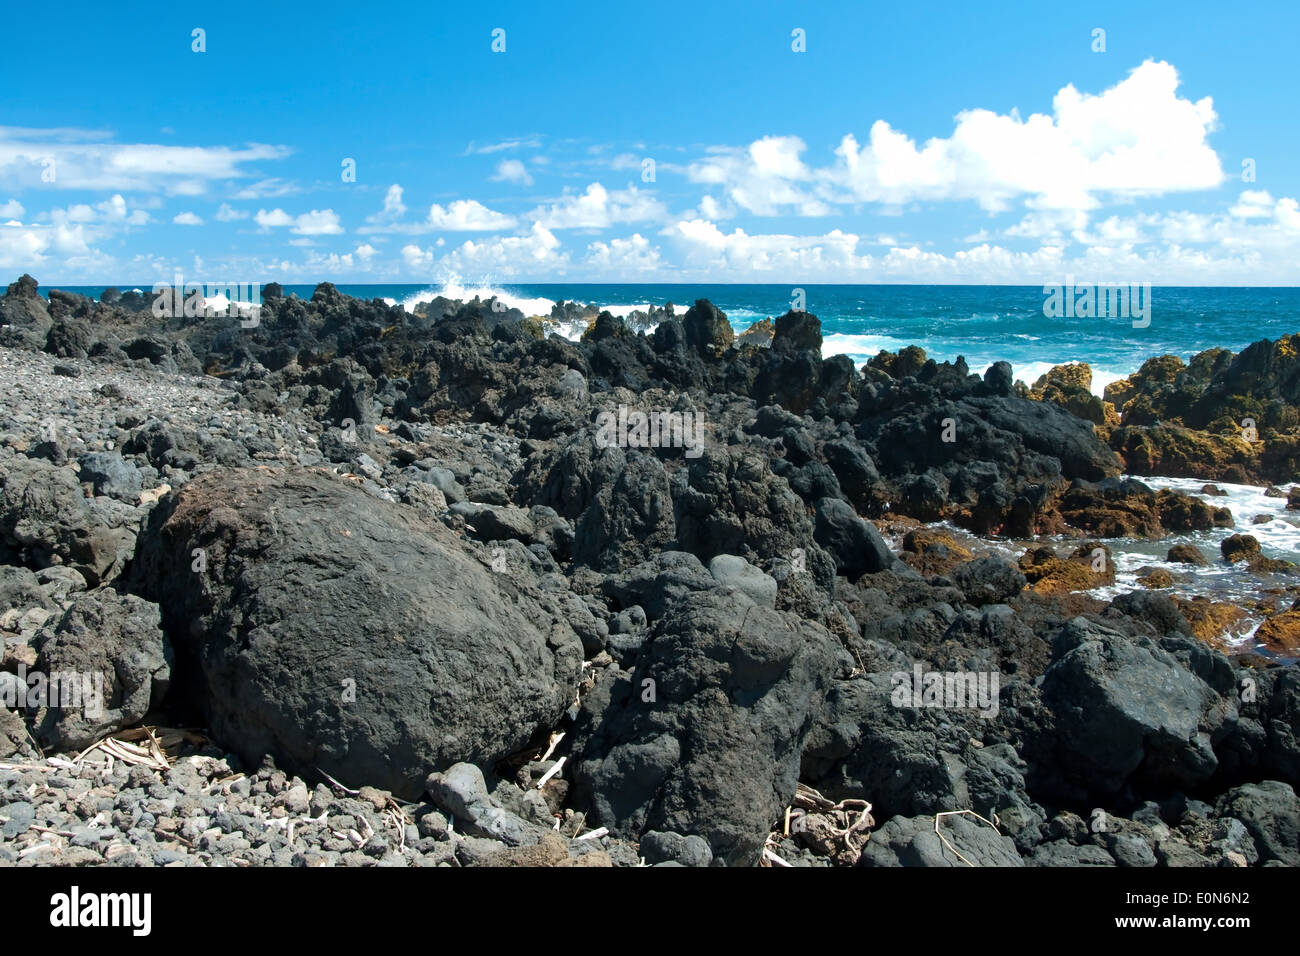 Volcano rocks on beach at Hana on Maui Hawaii Stock Photo